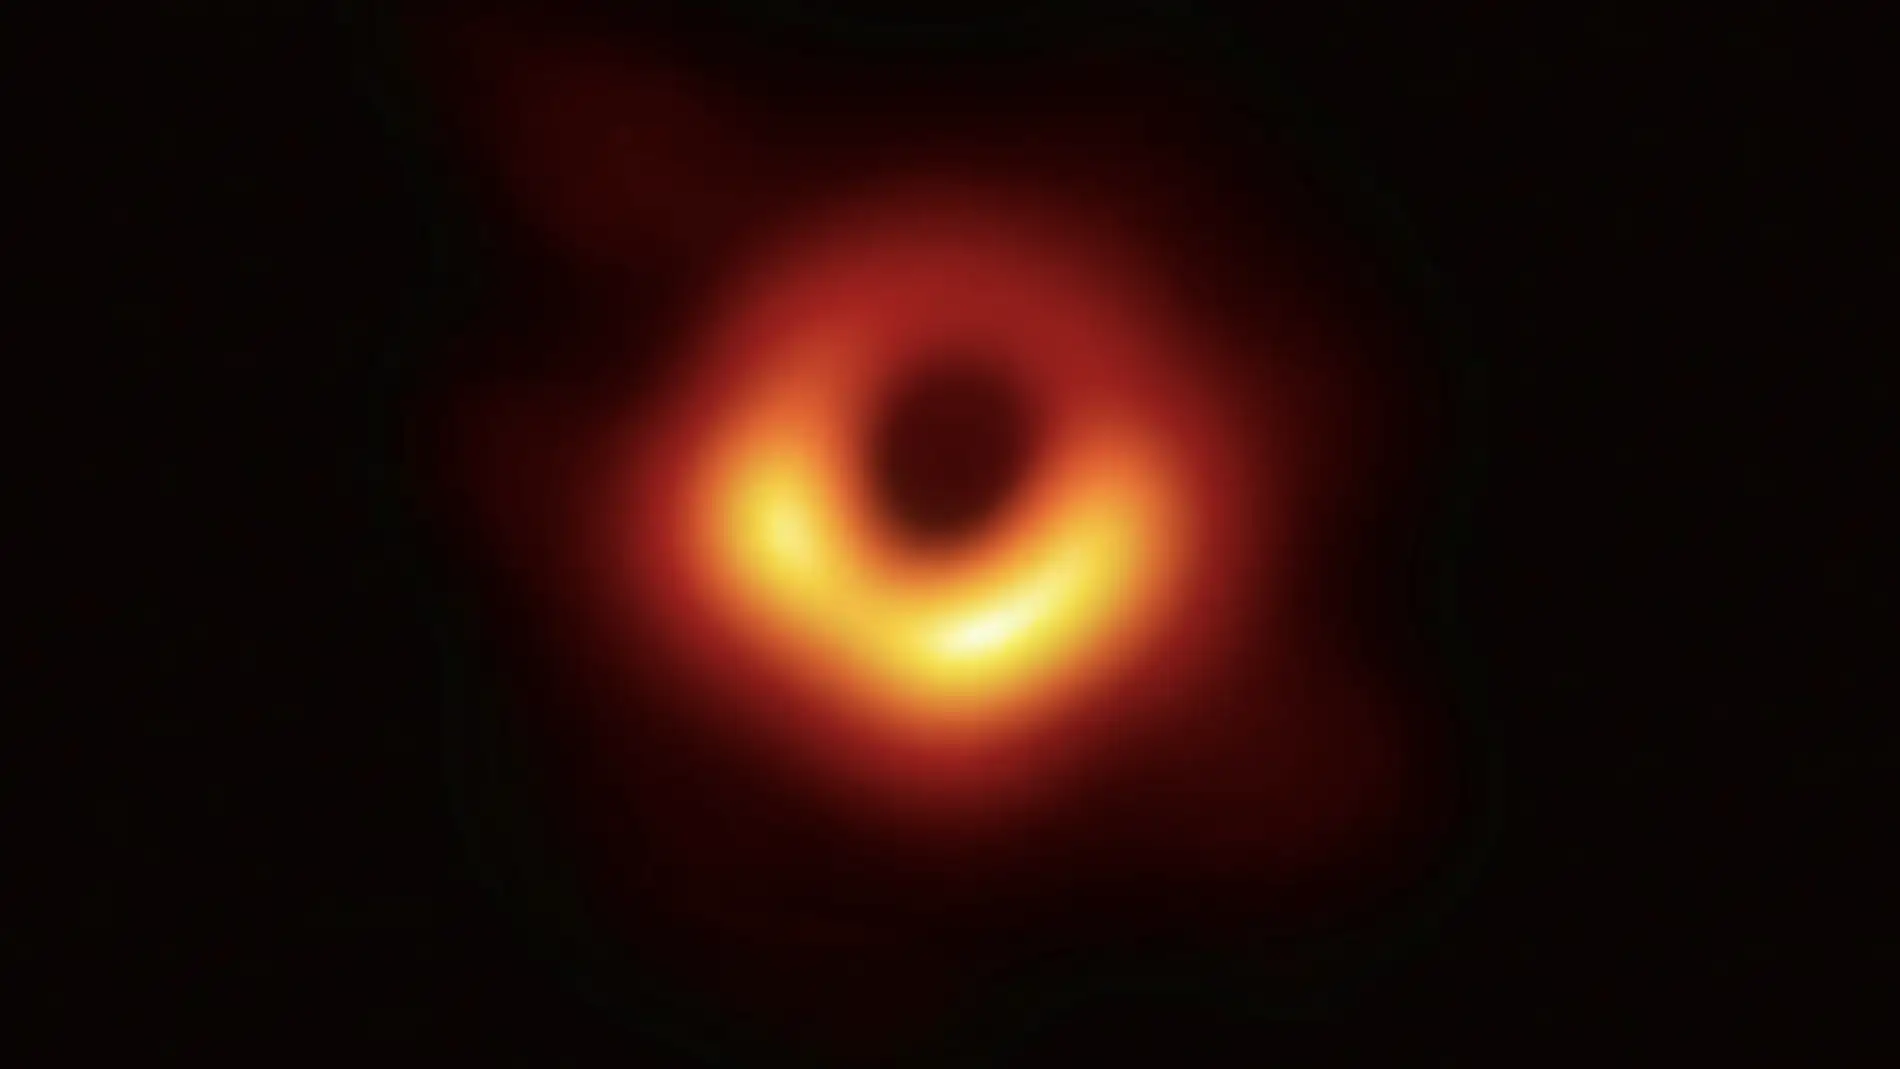 Capturan la primera imagen real de un agujero negro